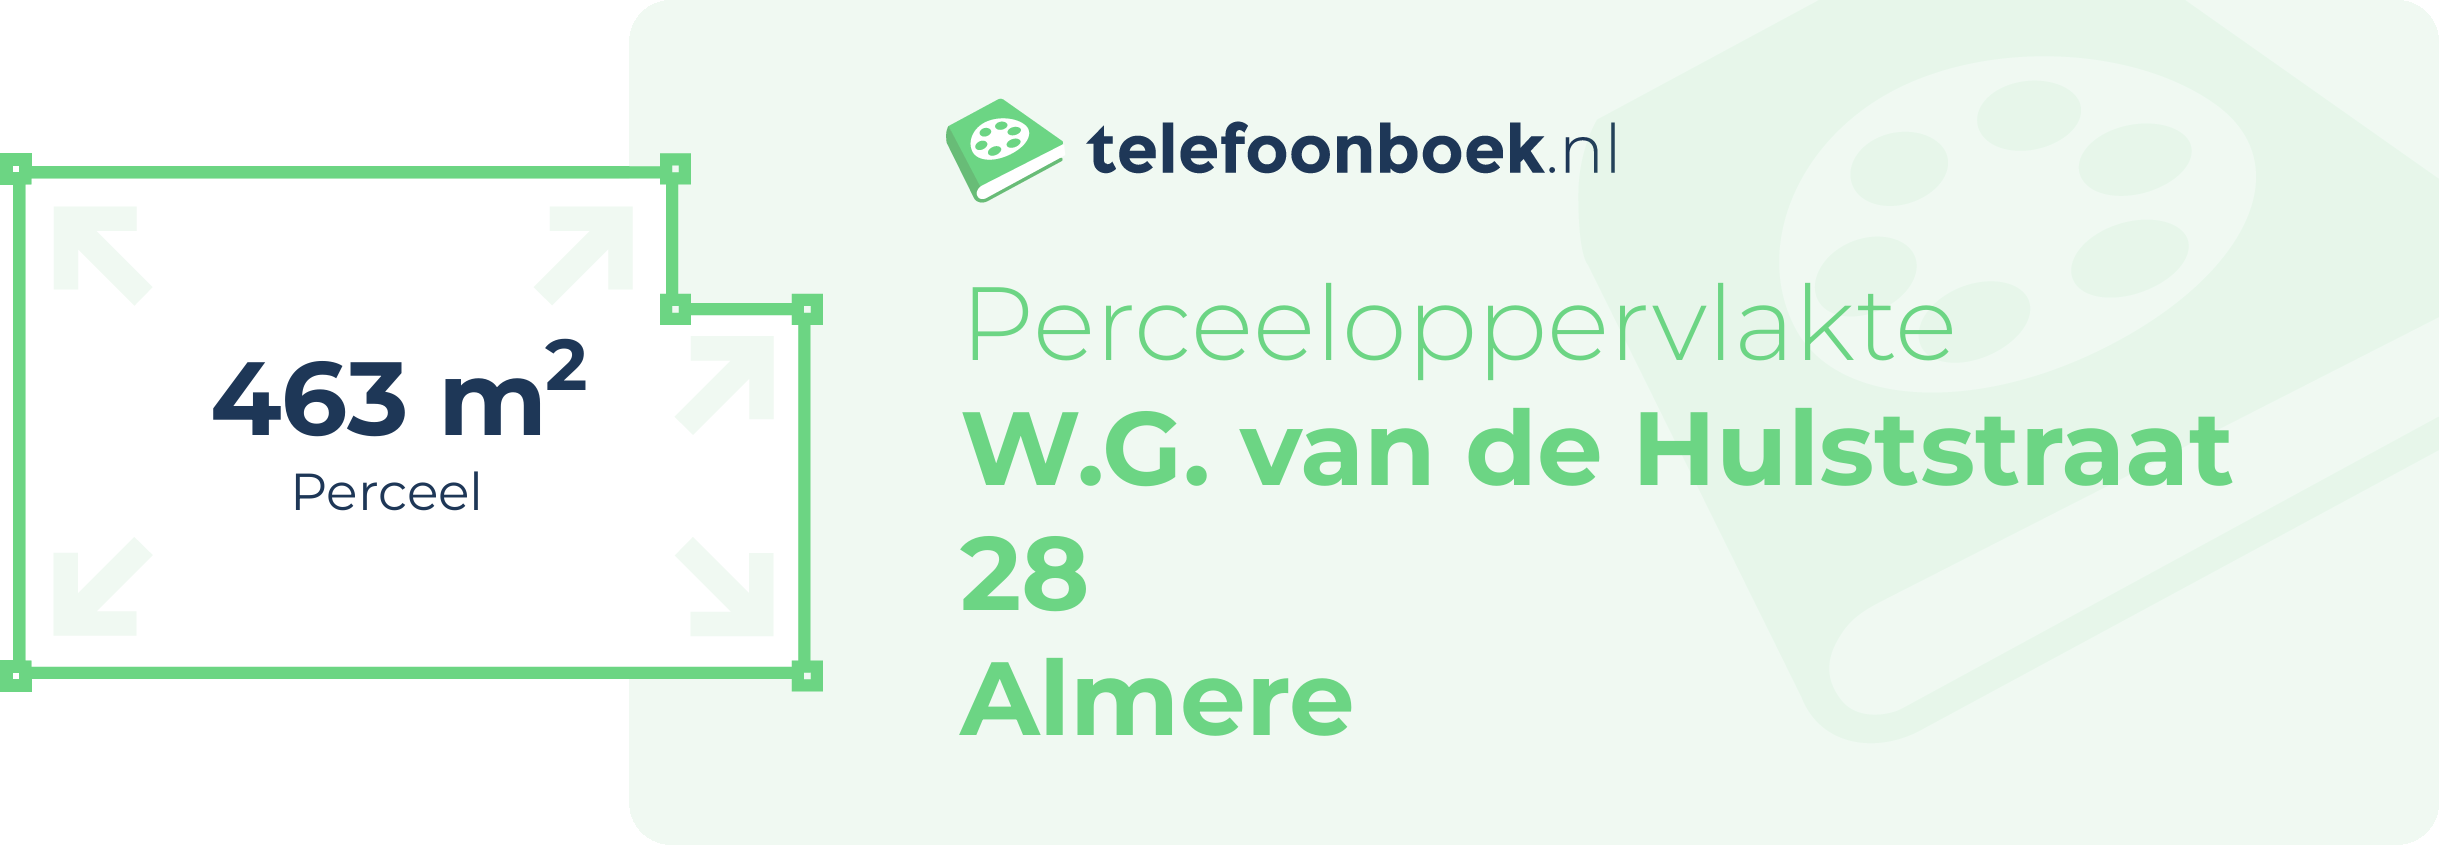 Perceeloppervlakte W.G. Van De Hulststraat 28 Almere